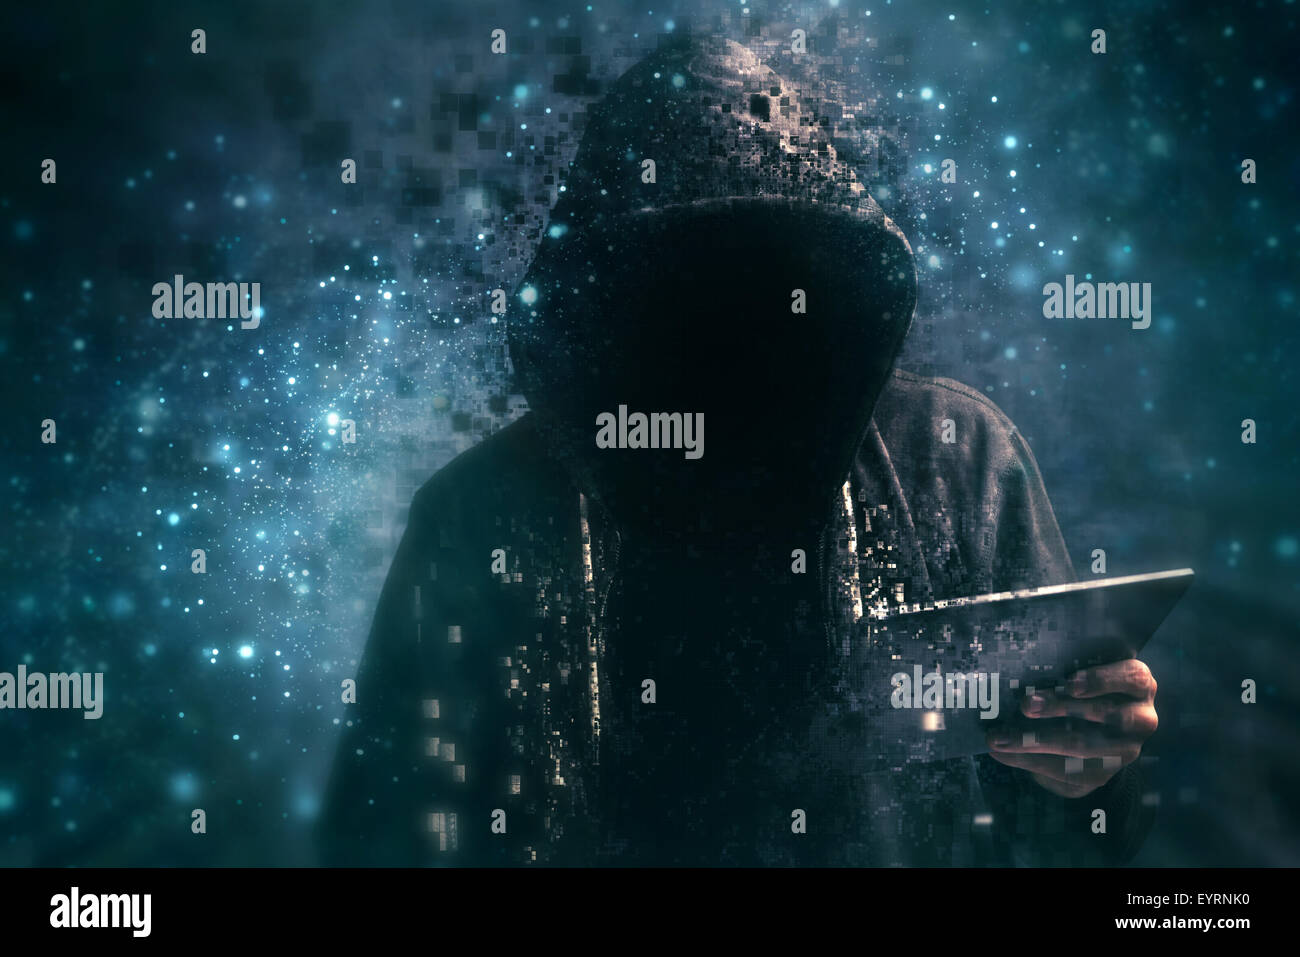 Pixelig unkenntlich gesichtslosen Kapuzen Cyber-Kriminellen Mann mit digital-Tablette im cyberspace Stockfoto